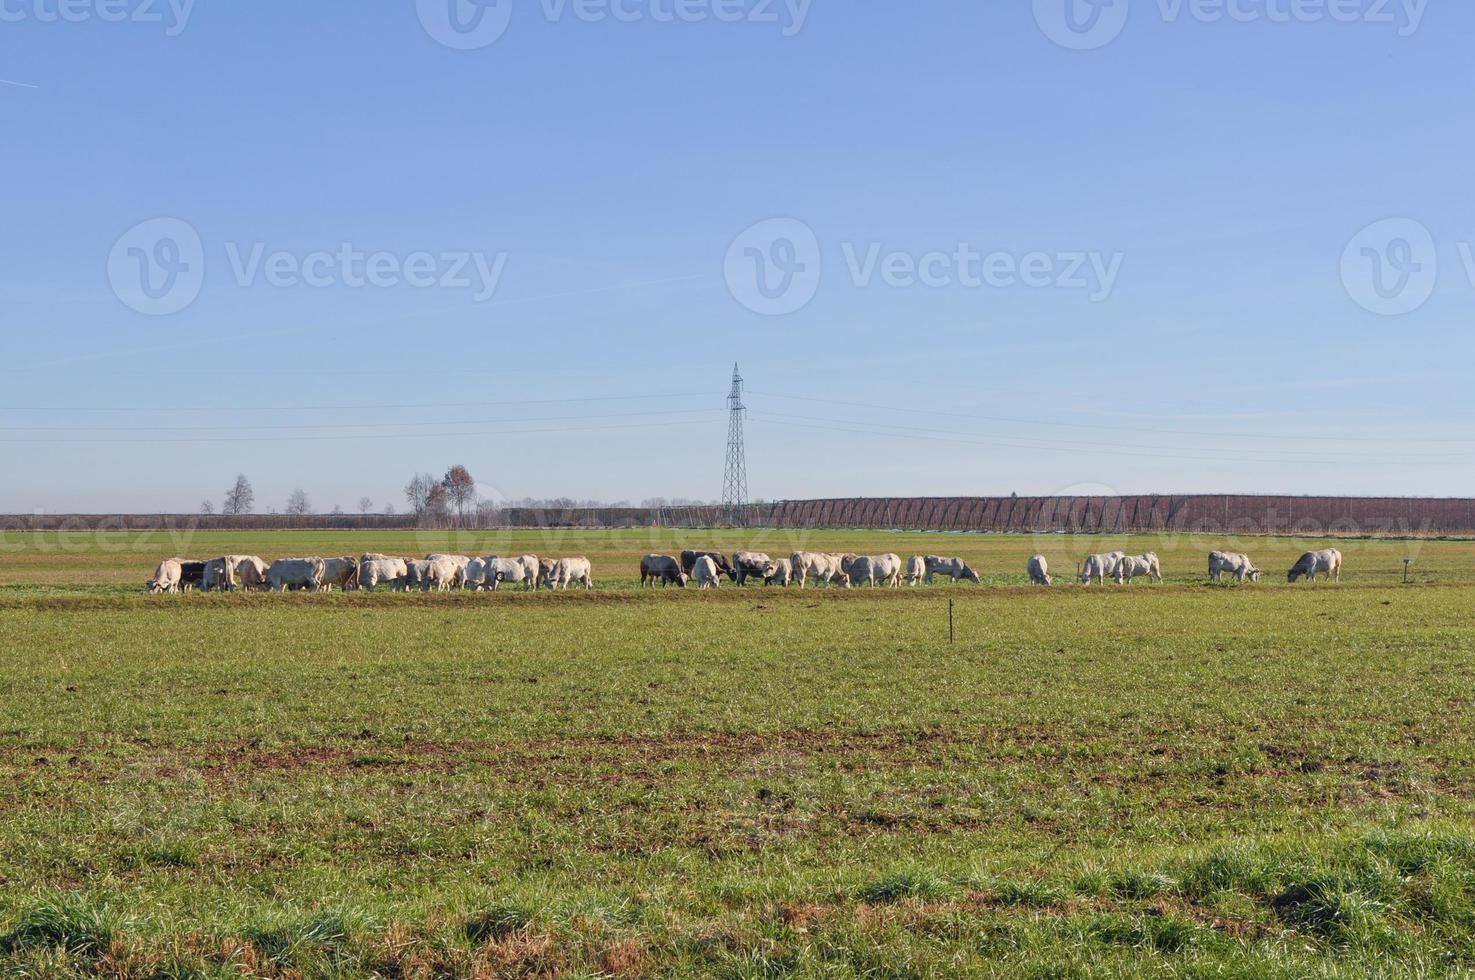 vacas de gado na grama em um prado foto